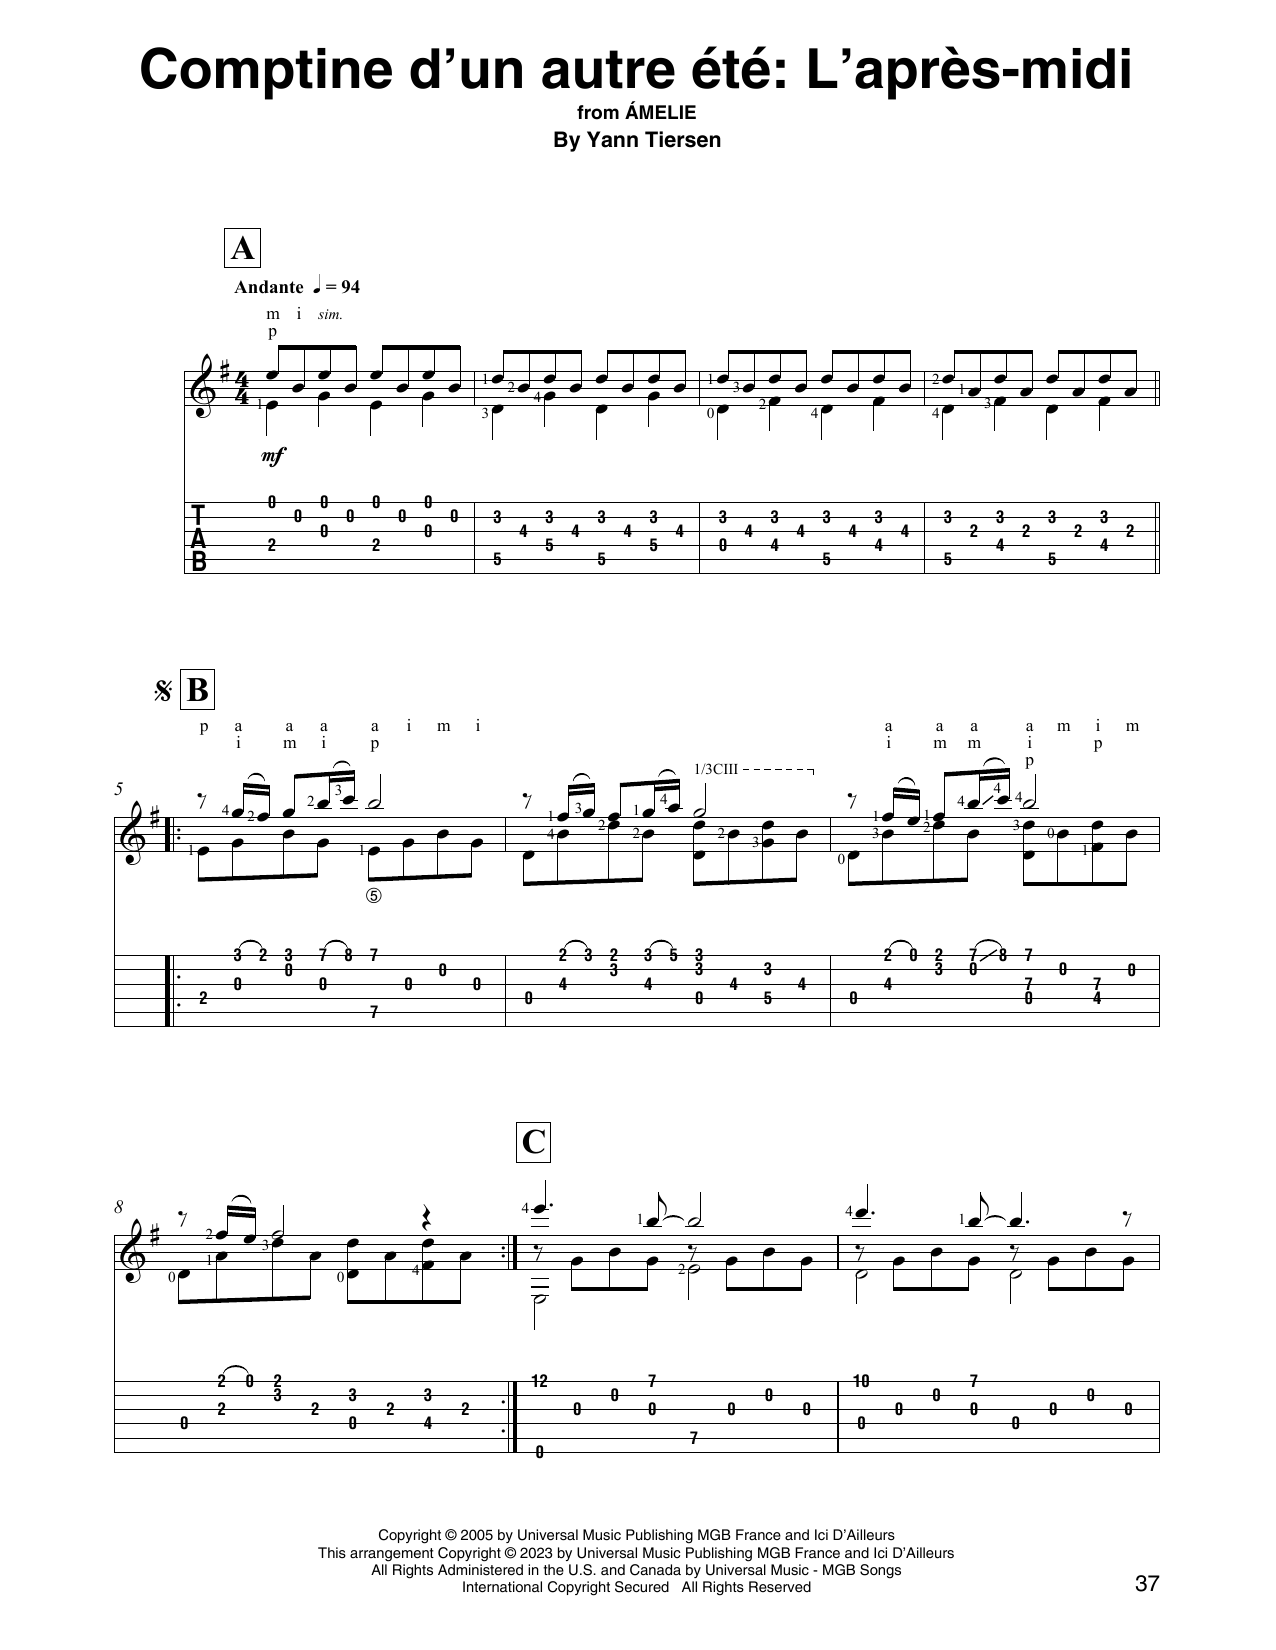 Yann Tiersen Comptine d'un autre été: L'après-midi (from Amelie) sheet music notes printable PDF score